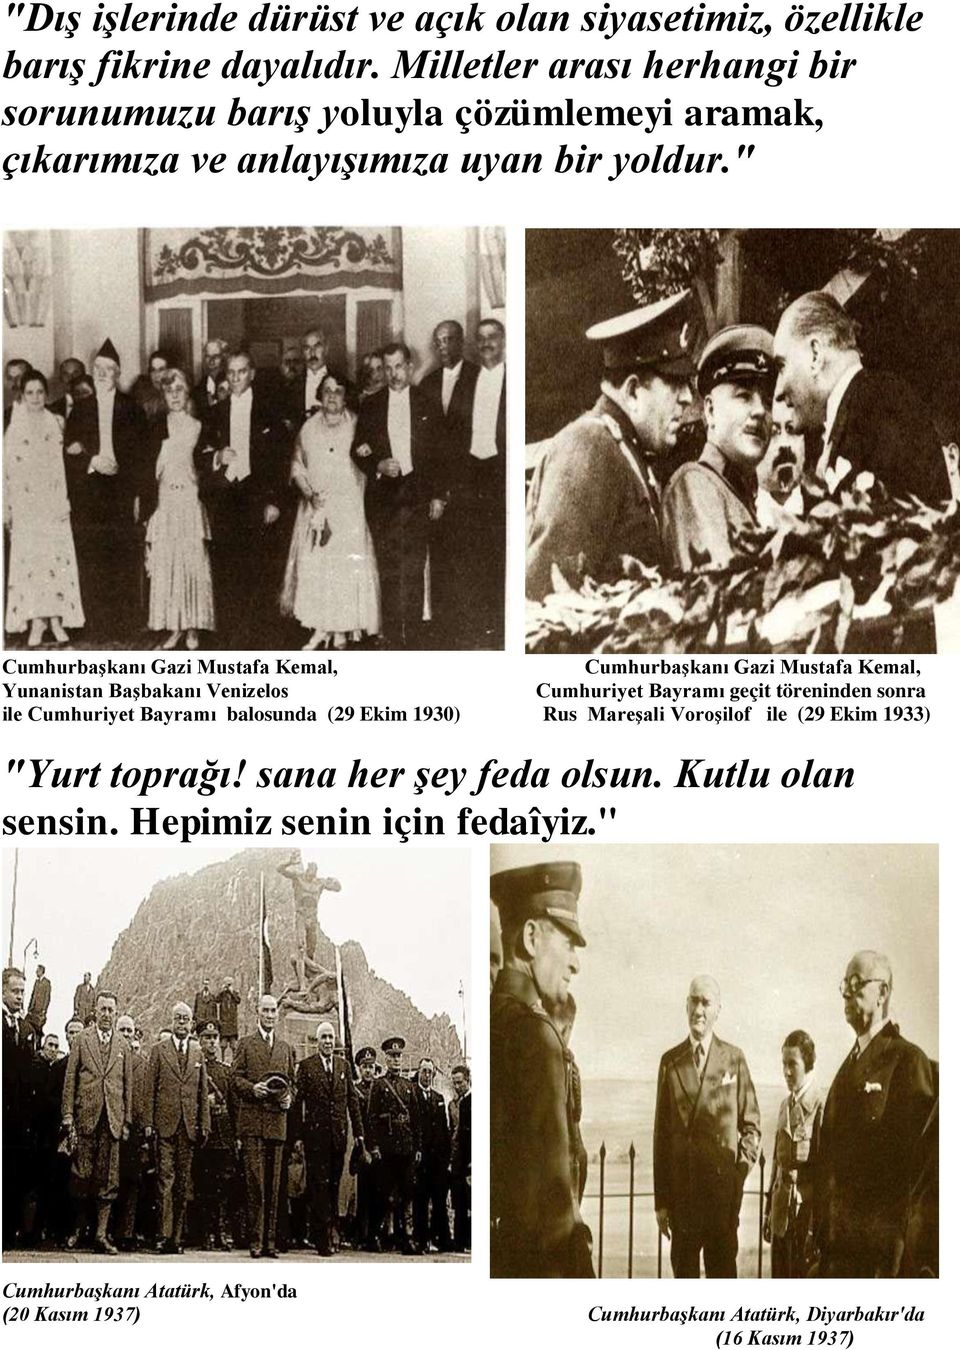 " Cumhurbaşkanı Gazi Mustafa Kemal, Cumhurbaşkanı Gazi Mustafa Kemal, Yunanistan Başbakanı Venizelos Cumhuriyet Bayramı geçit töreninden sonra ile